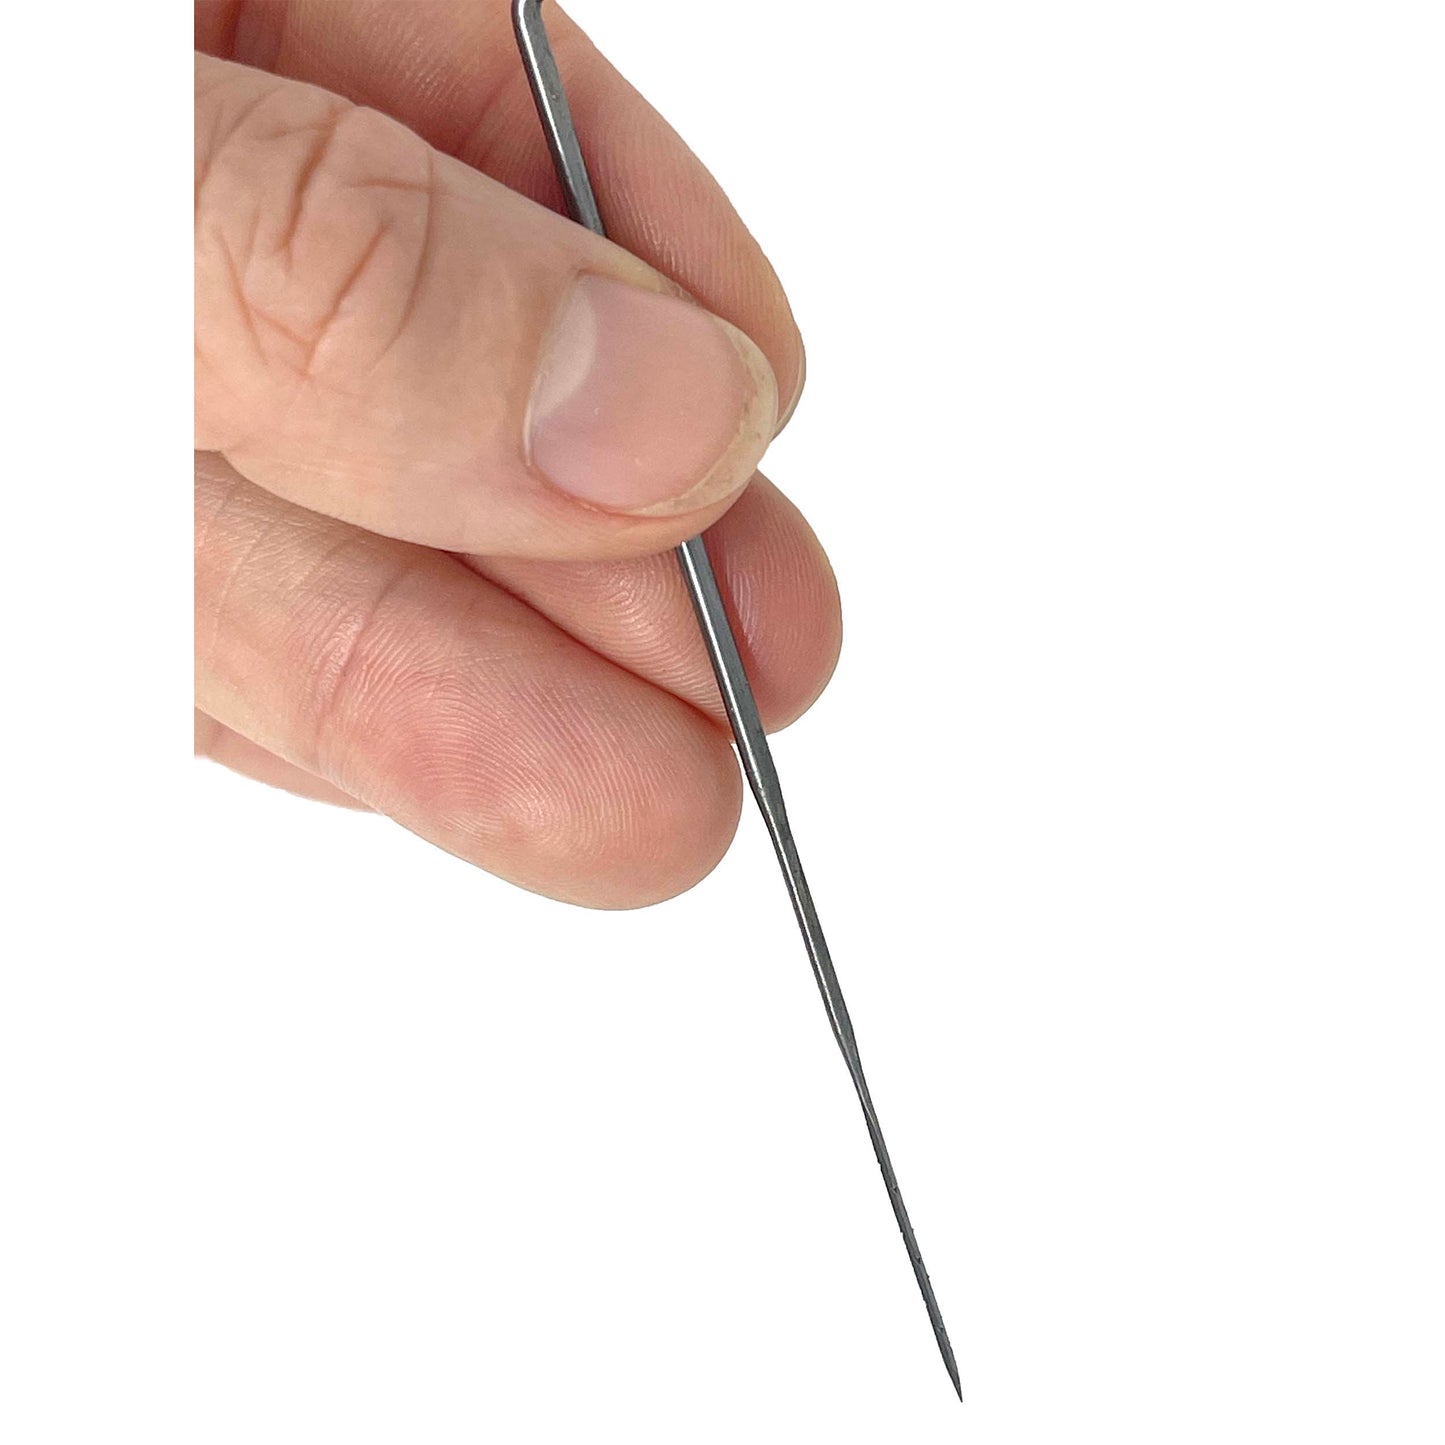 Felting Needle Structuring Needle Triangular  Gauge 32 or 36 Coarse  Long